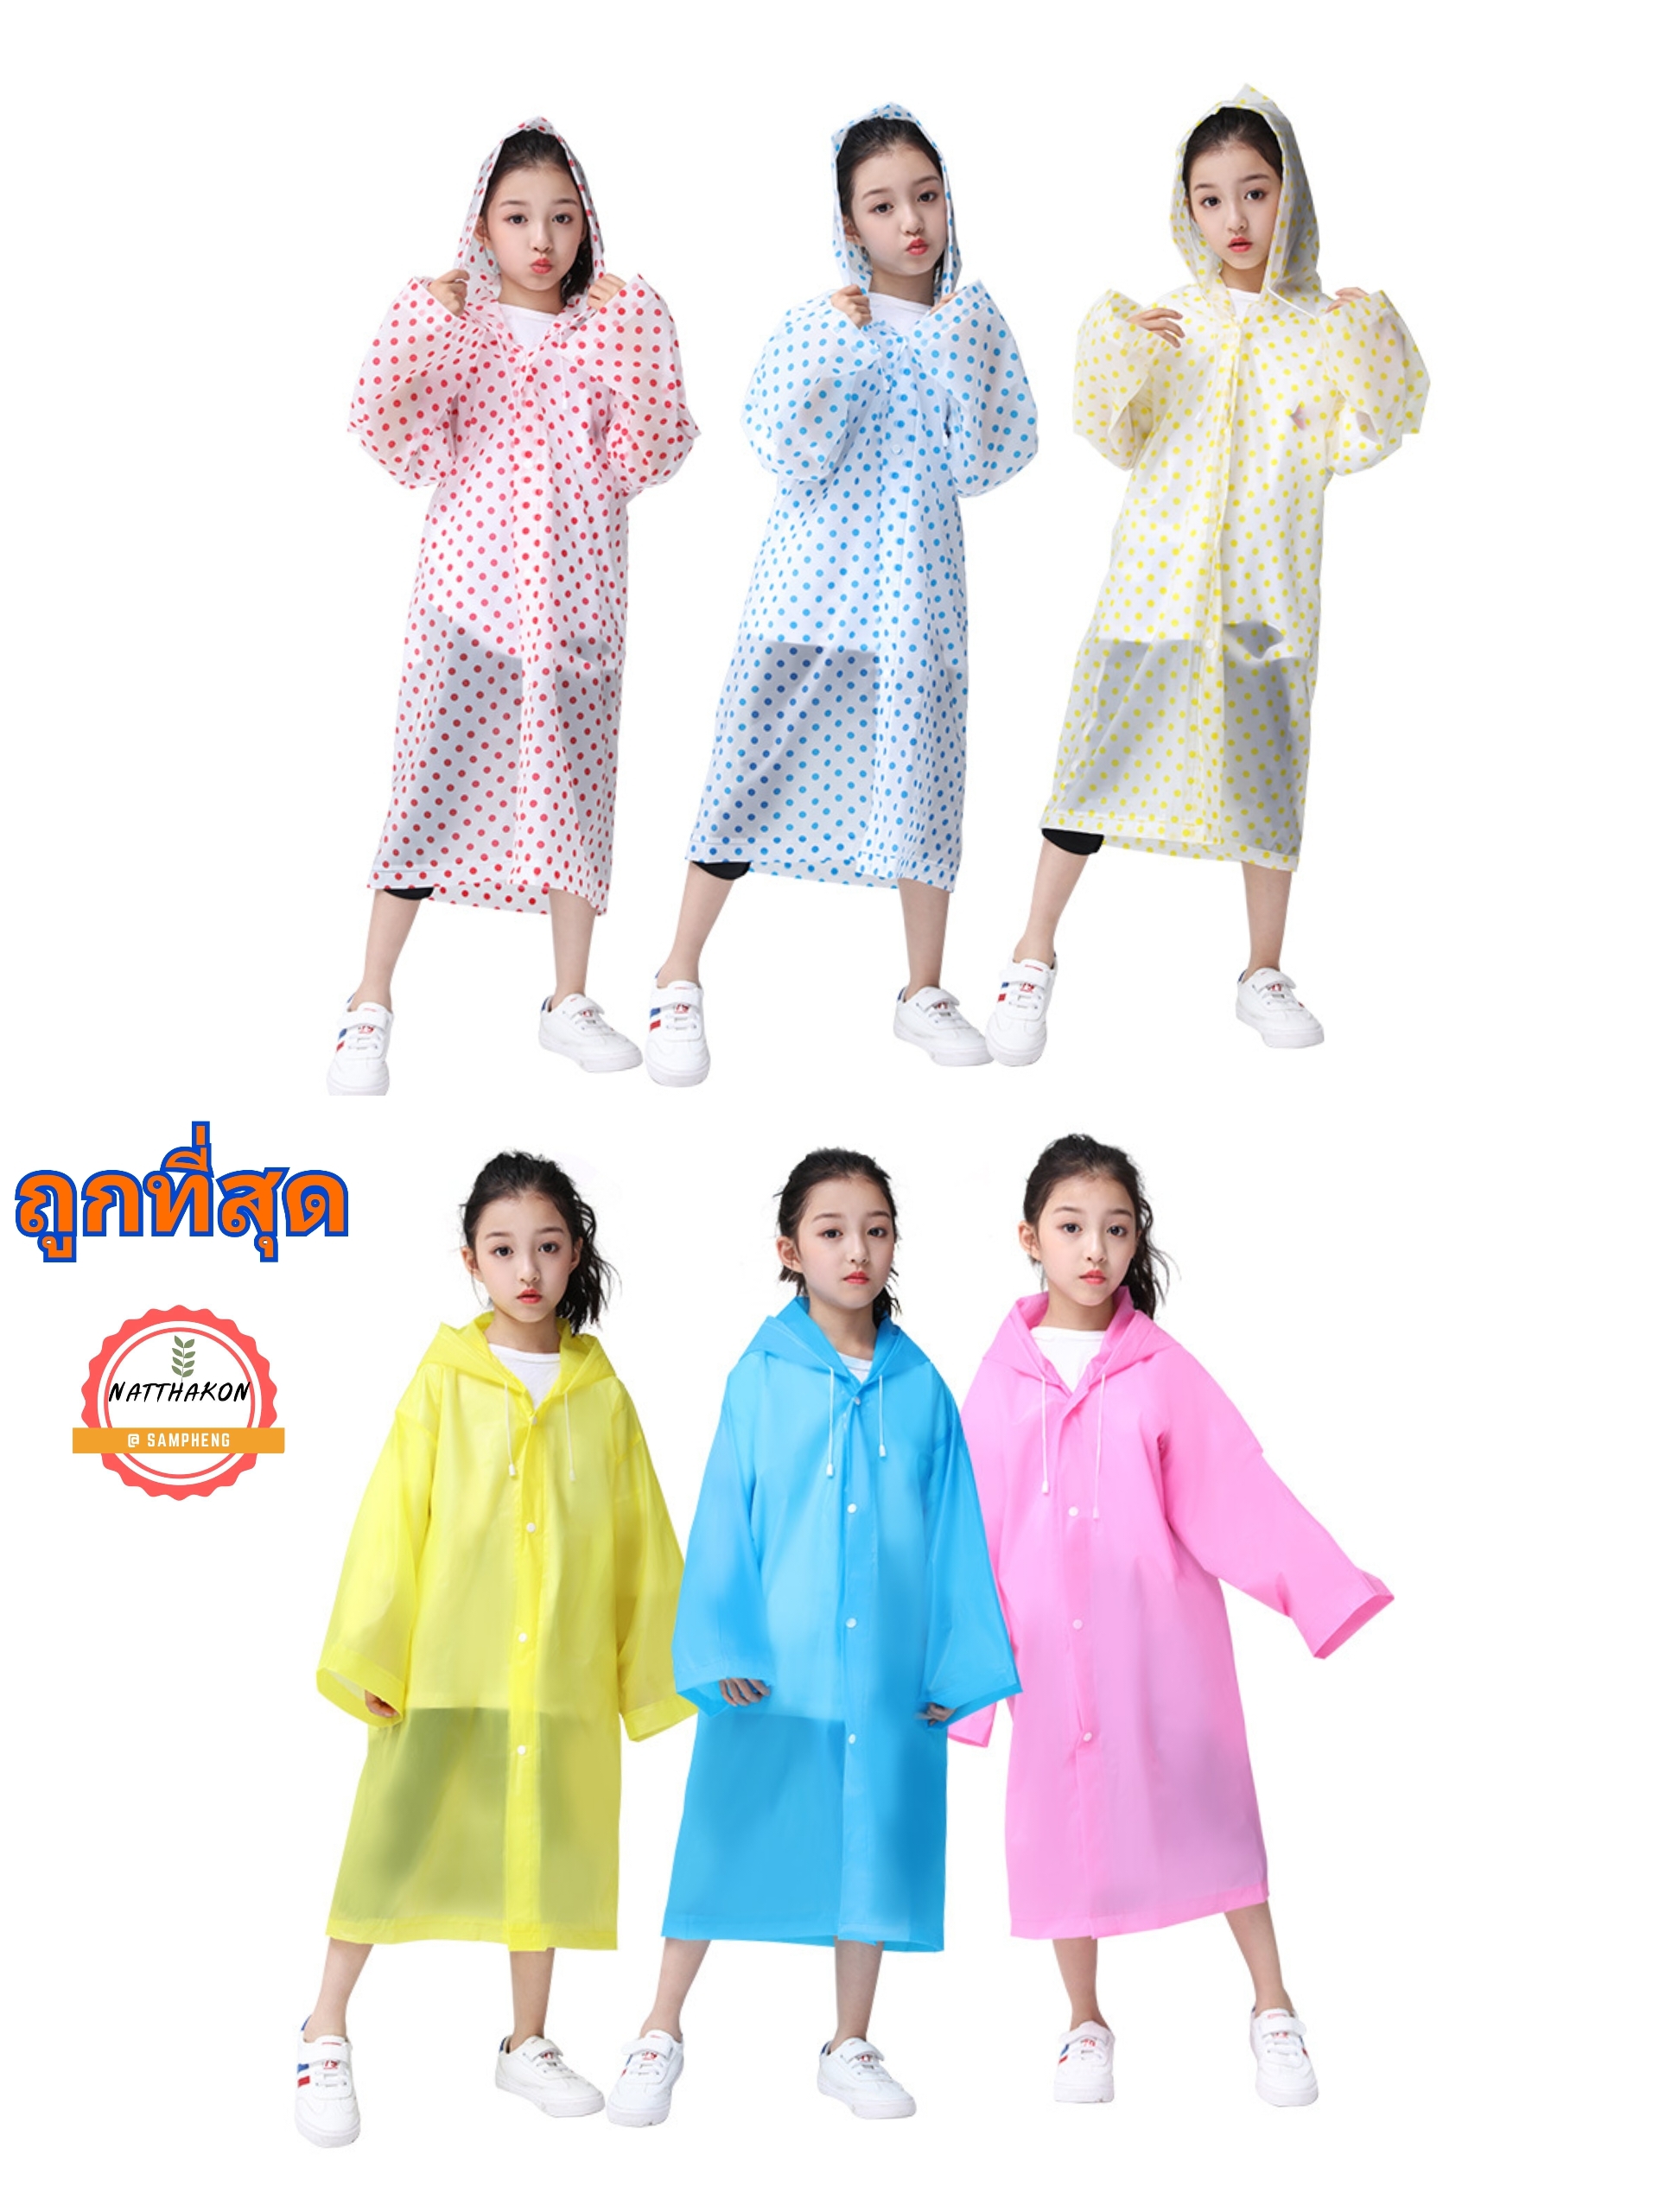 เสื้อกันฝนเด็ก EVA เสื้อกันฝน ลายจุดรุ่น96g แฟชั่นเกาหลีทันสมัยราคาถูก น้ำหนักเบาพกพาสะดวก ทนทาน ยืดหยุ่น ไม่ขาดง่าย ชุด